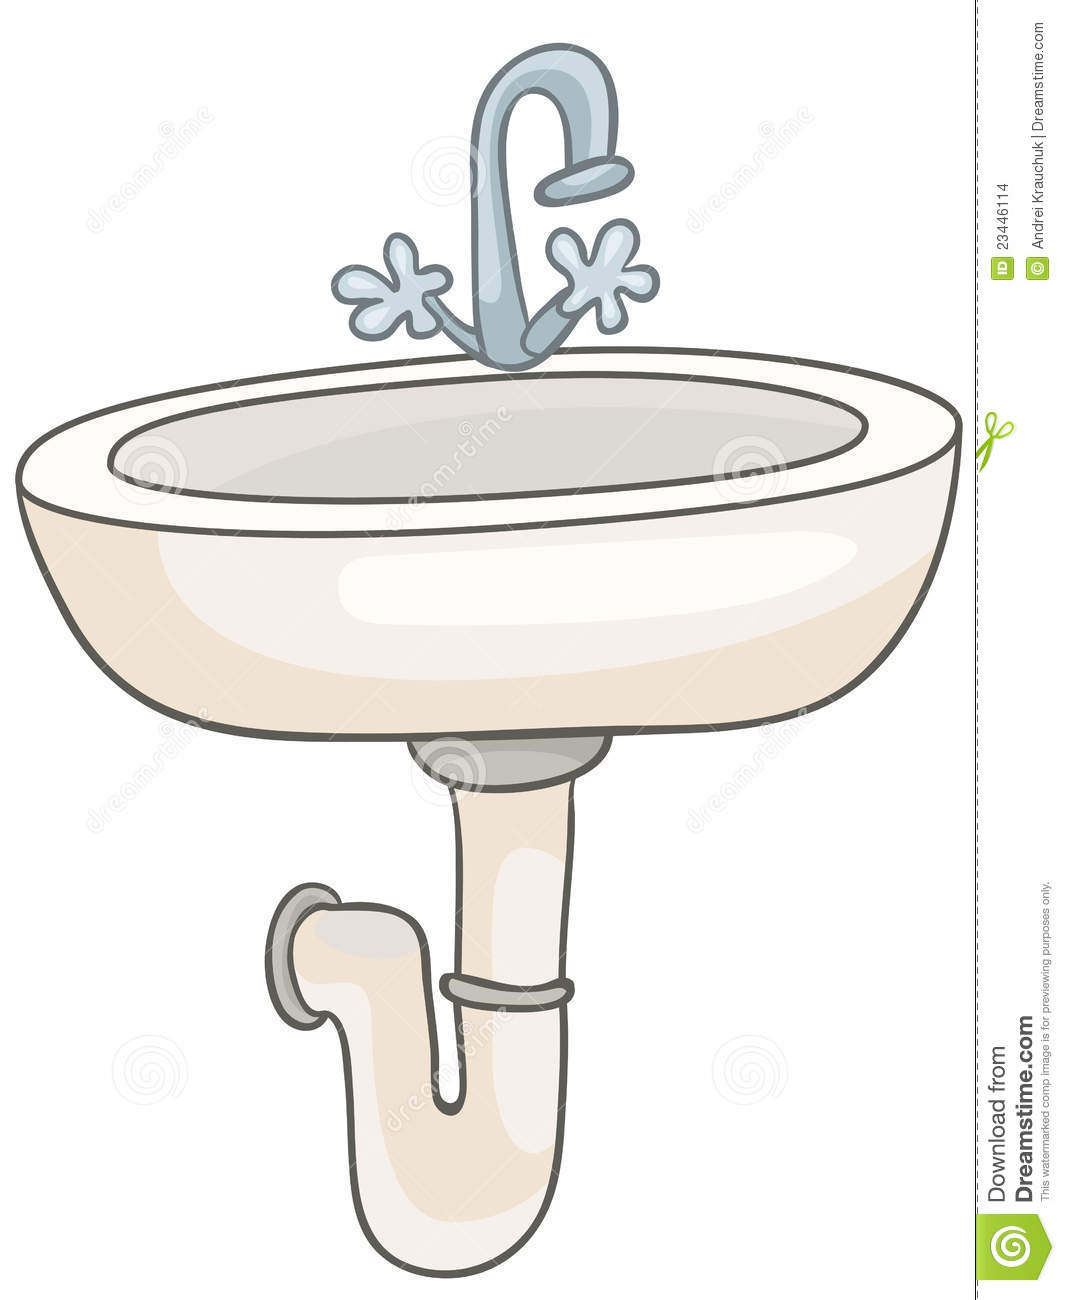 Cartoon Home Washroom Sink